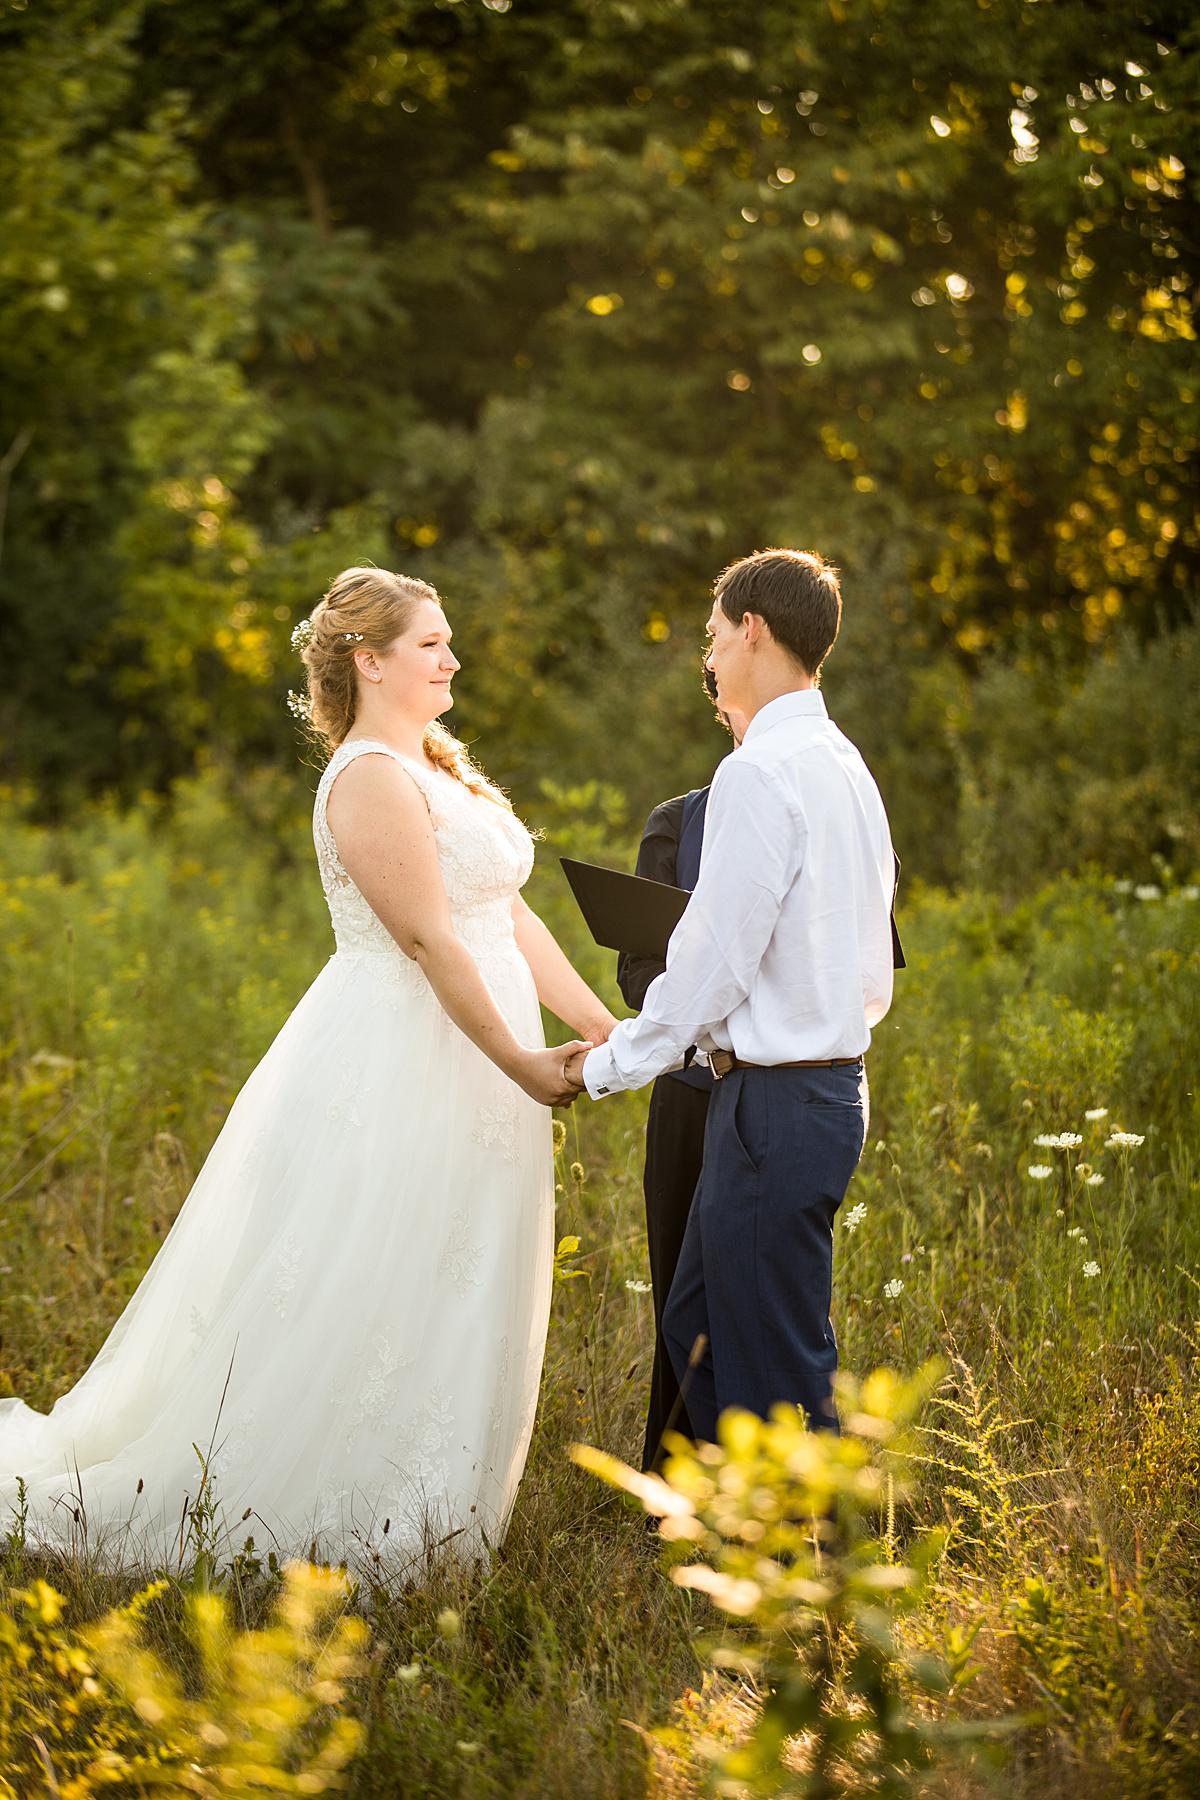 Wedding photographs at Lincoln Brick Park, Grand Ledge Michigan